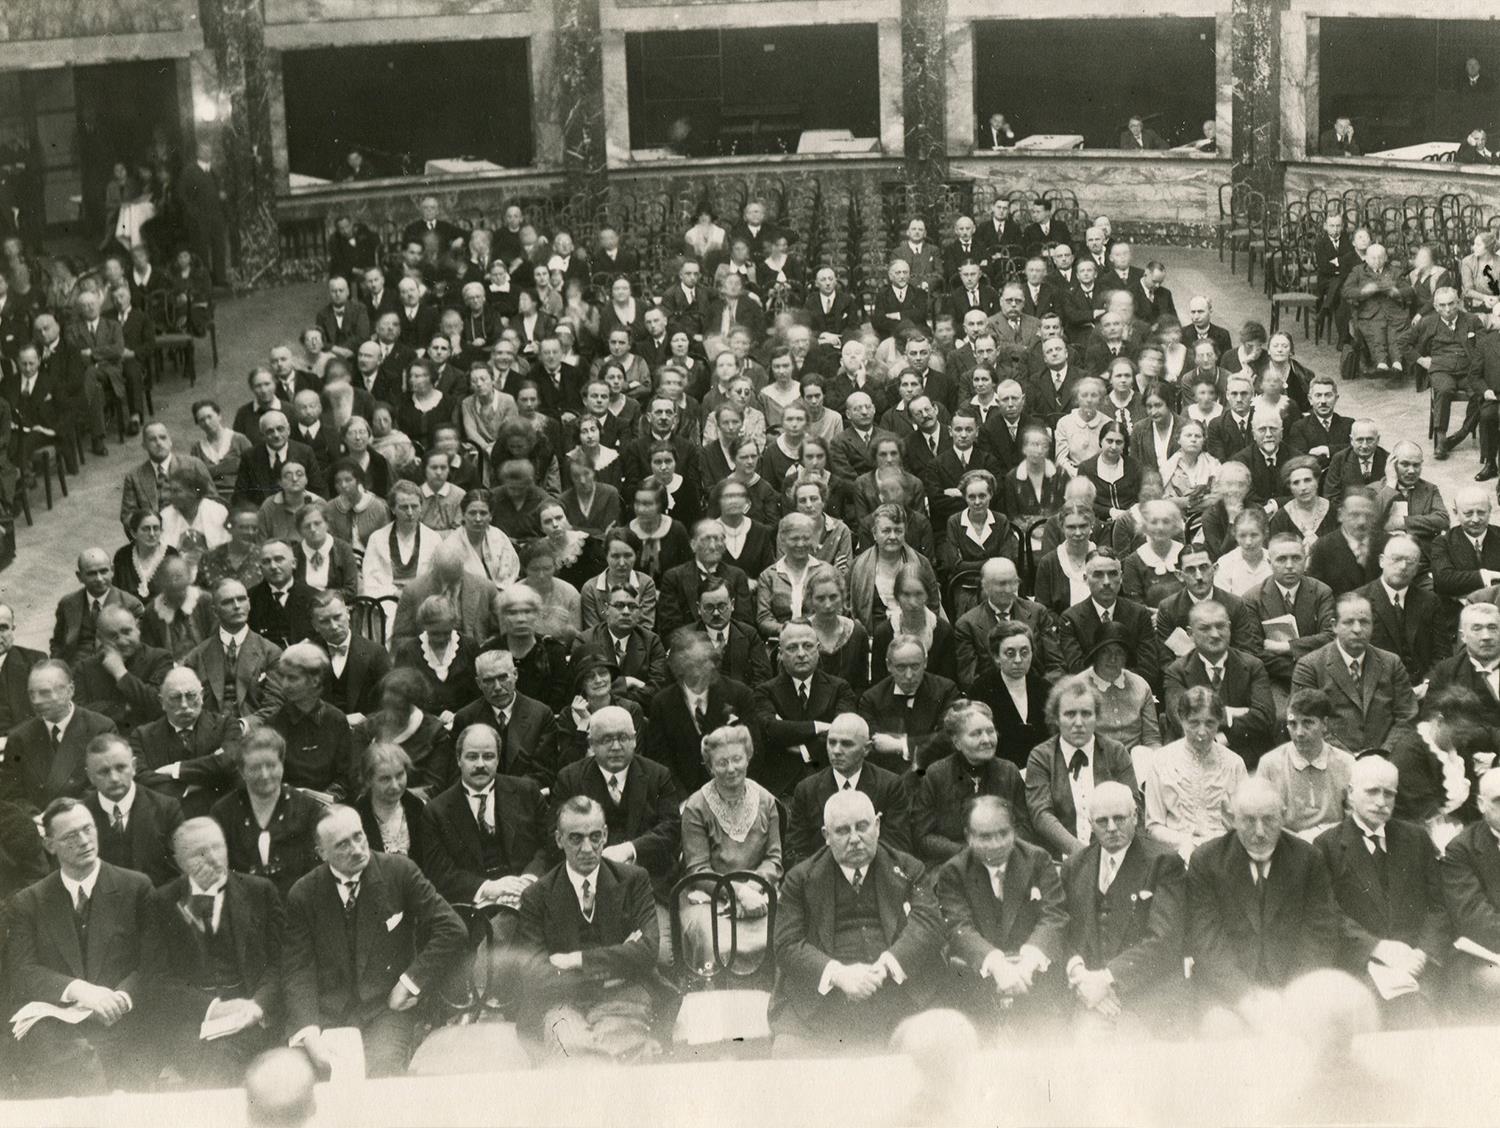 schwarz-weiß Fotografie vieler Menschen auf Stühlen sitzend in einem festlichen großen Saal.